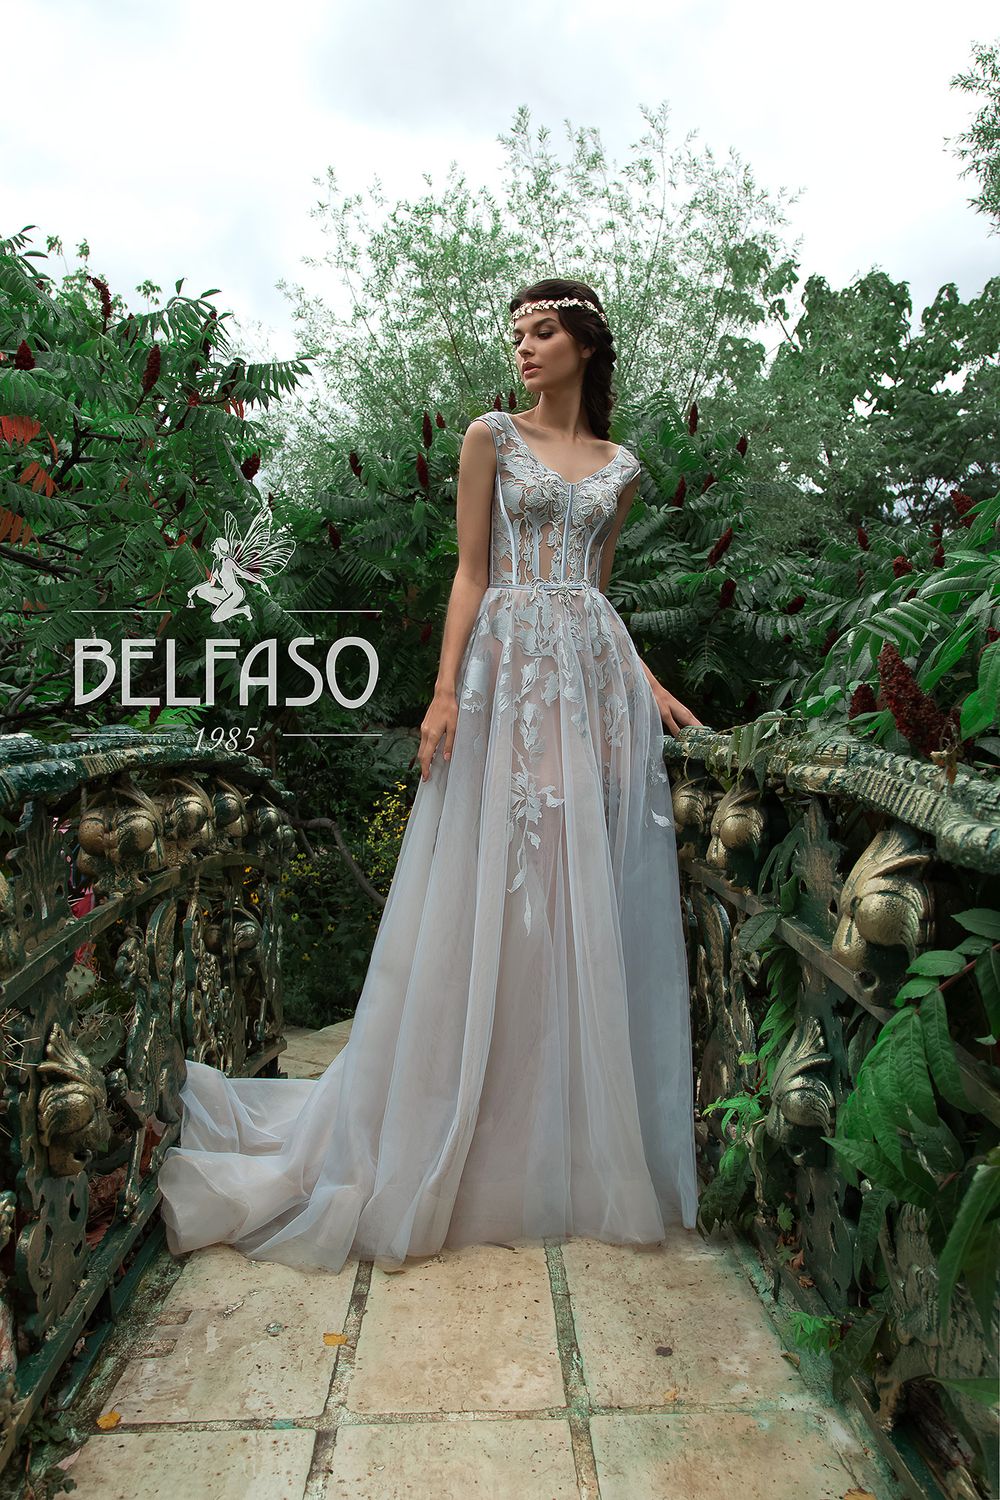 Свадебное платье Лилит